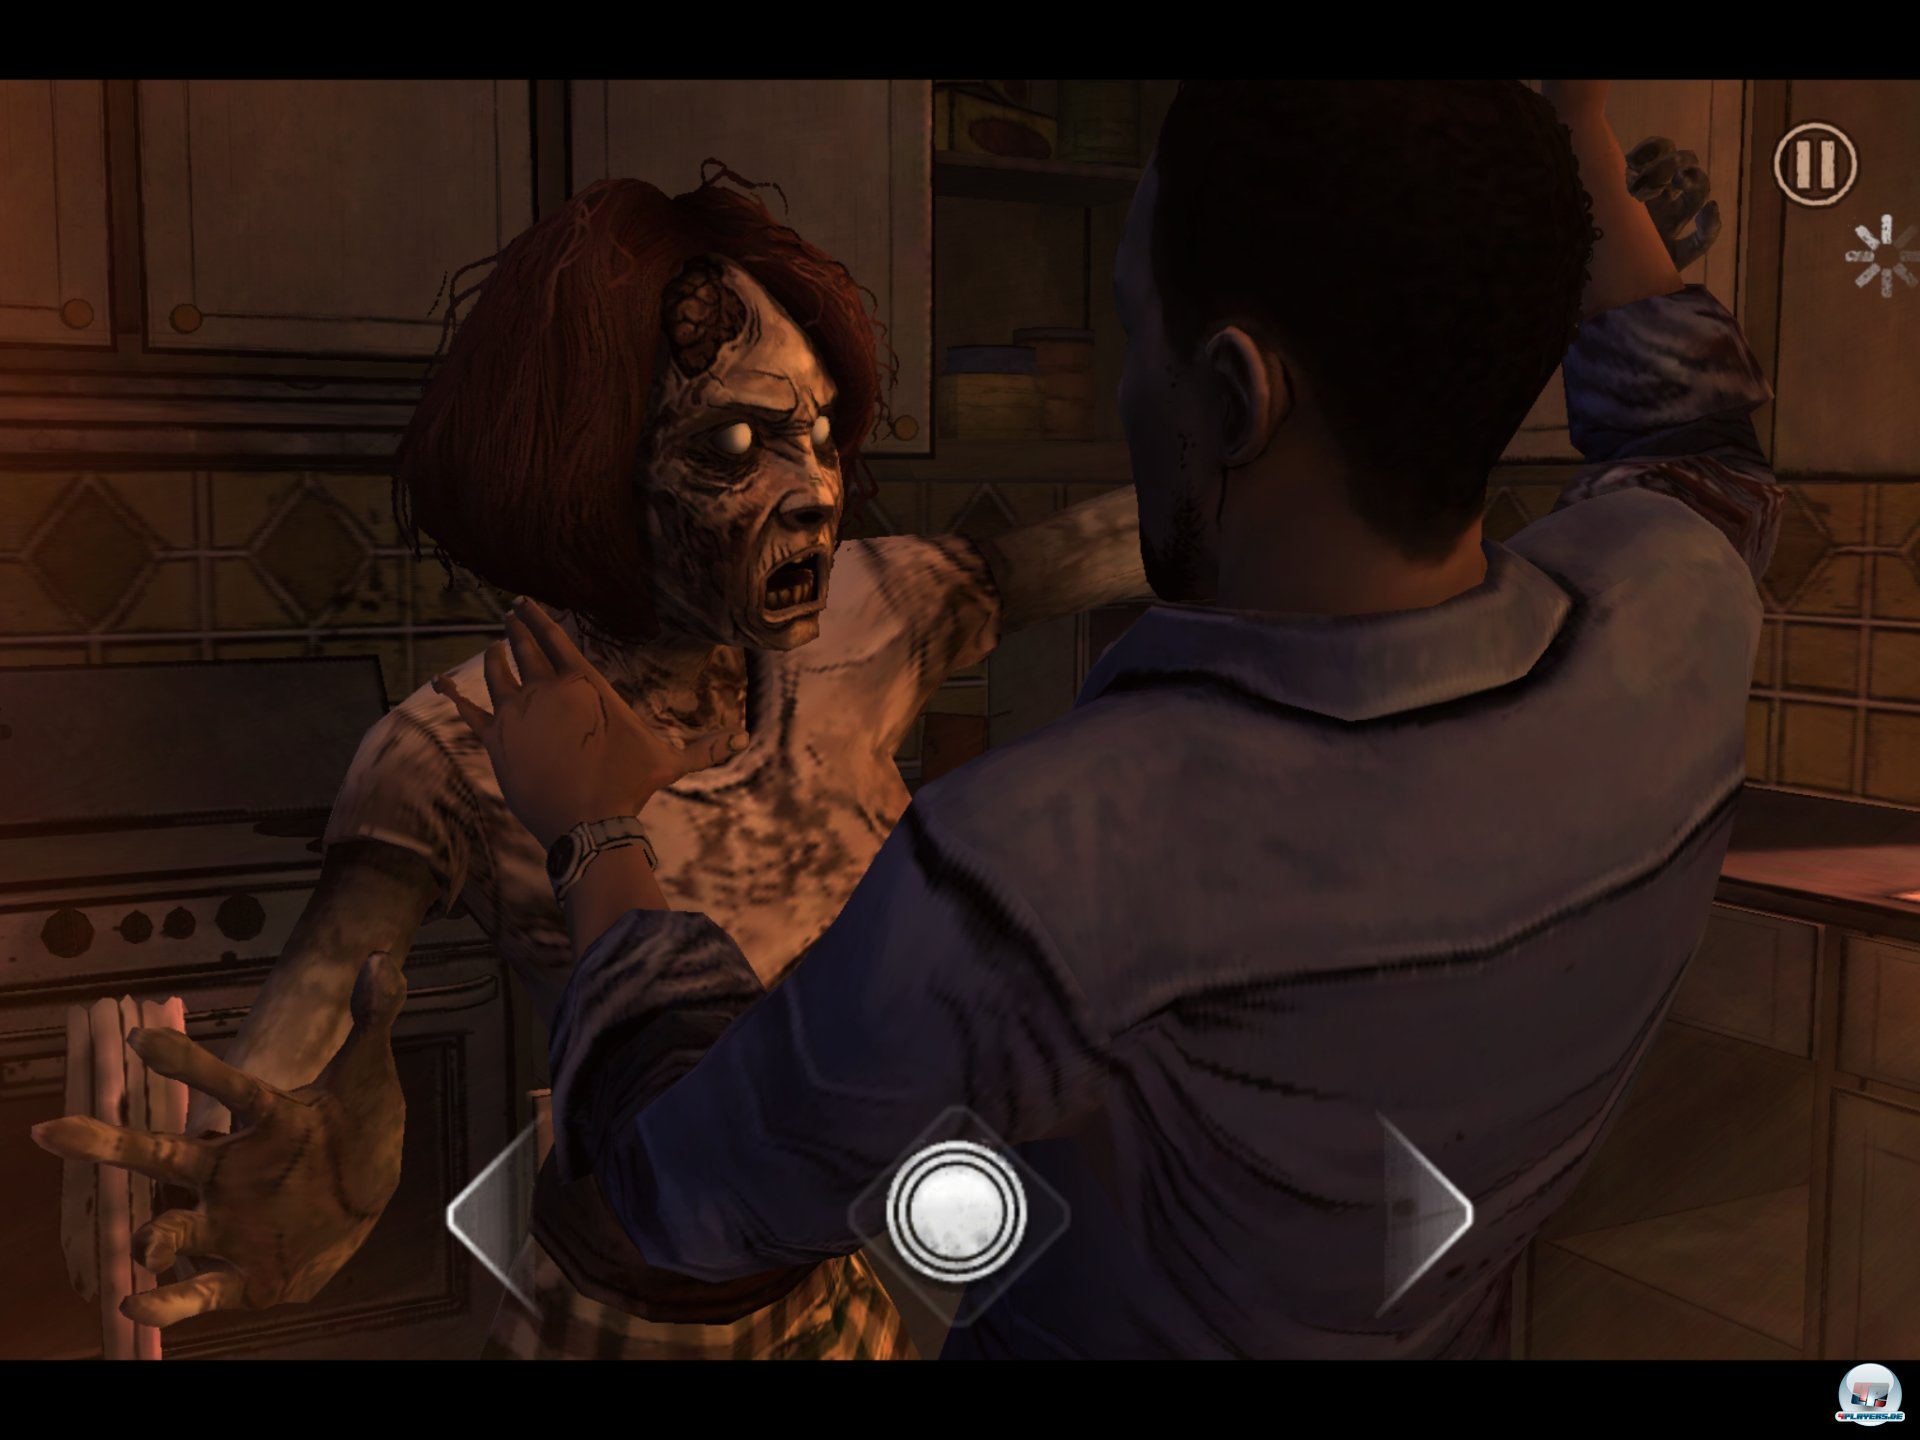 Man spielt Lee Everett, der sich einem kriechenden Zombie erwehren muss - auch unter iOS in Form eines Reaktionstests: Einfach mit dem Finger auf die angezeigten Kreise tippen.